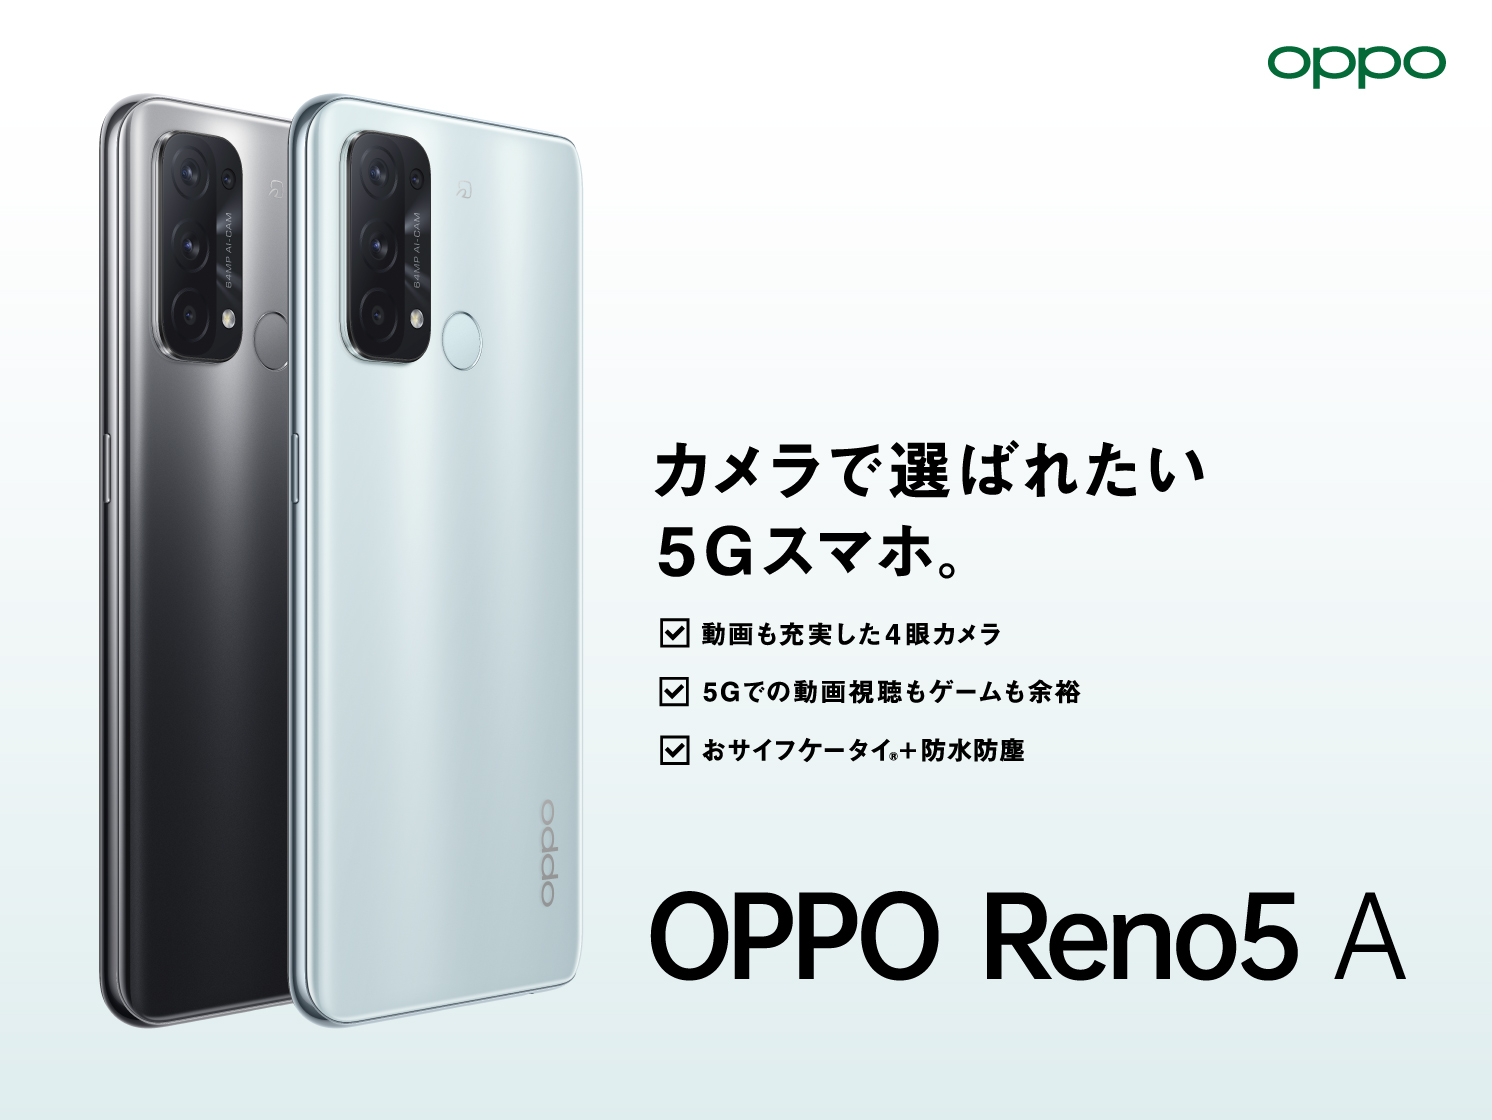 人気のOPPO Reno Aシリーズの新機種 「OPPO Reno5 A」が6月11日(金)から発売開始 | オッポ